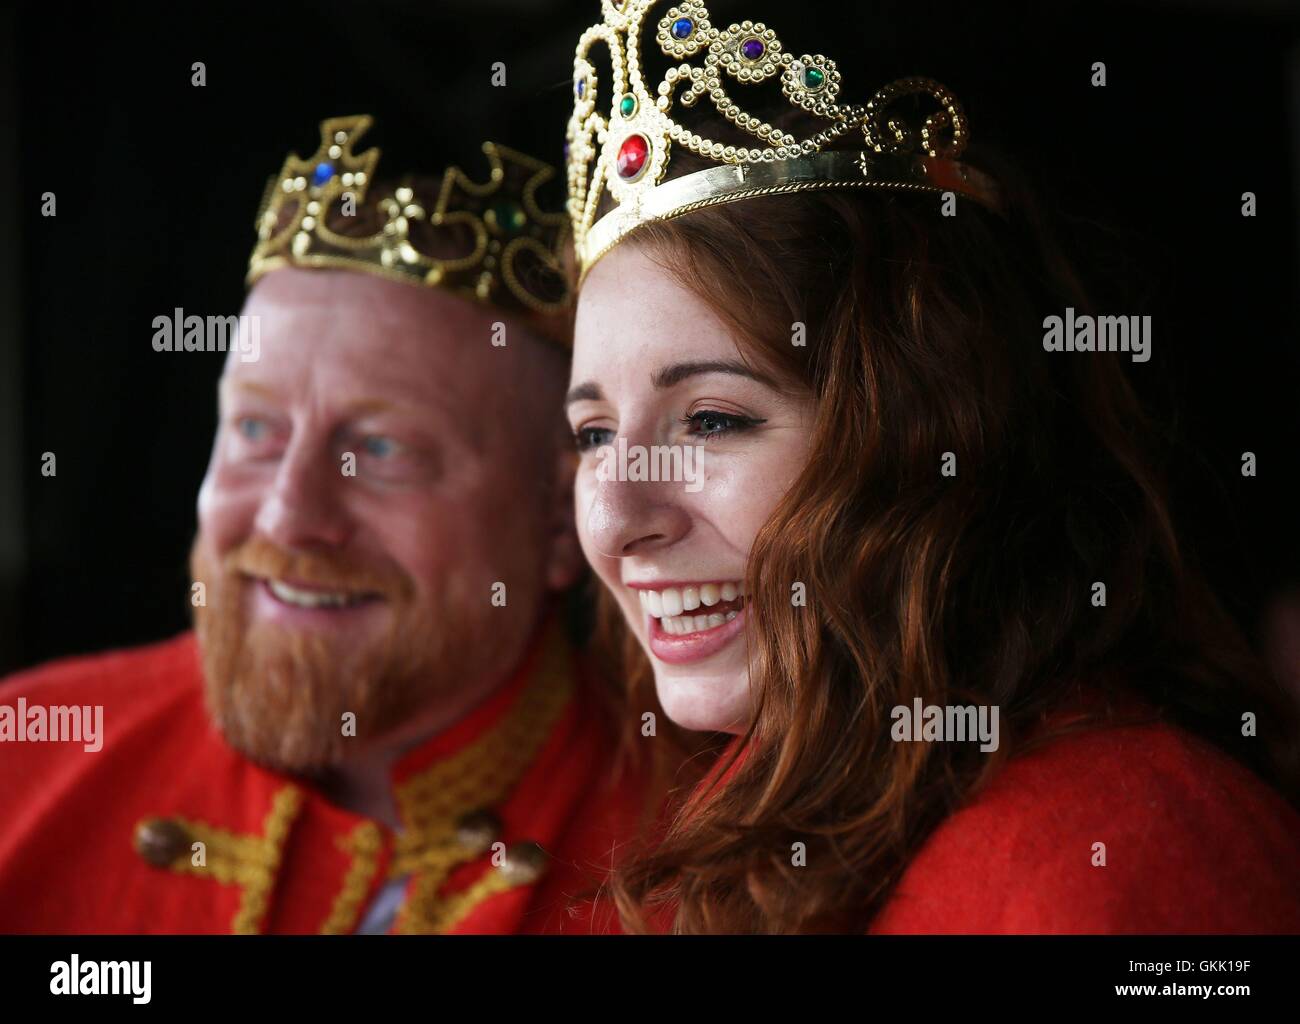 Der neu gekrönte König und Königin der rothaarige Alan O'Neill und Emma Ni Chearuil auf der irischen Rothaarige Convention im Dorf Crosshaven in Cork, Irland statt. Stockfoto